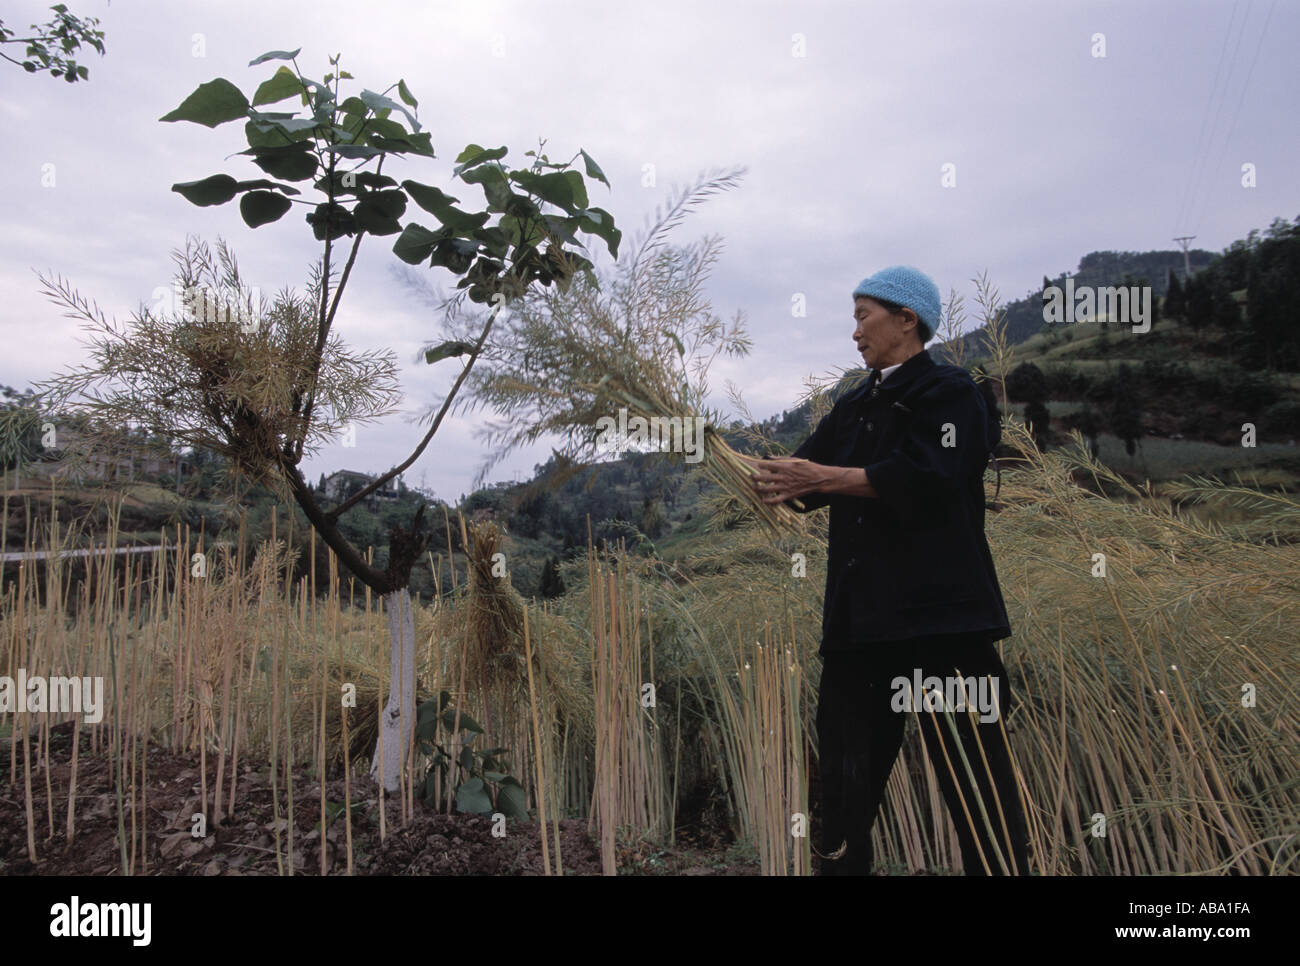 A Ba farmer harvests canola plants near Wanxian China 042103 Stock Photo